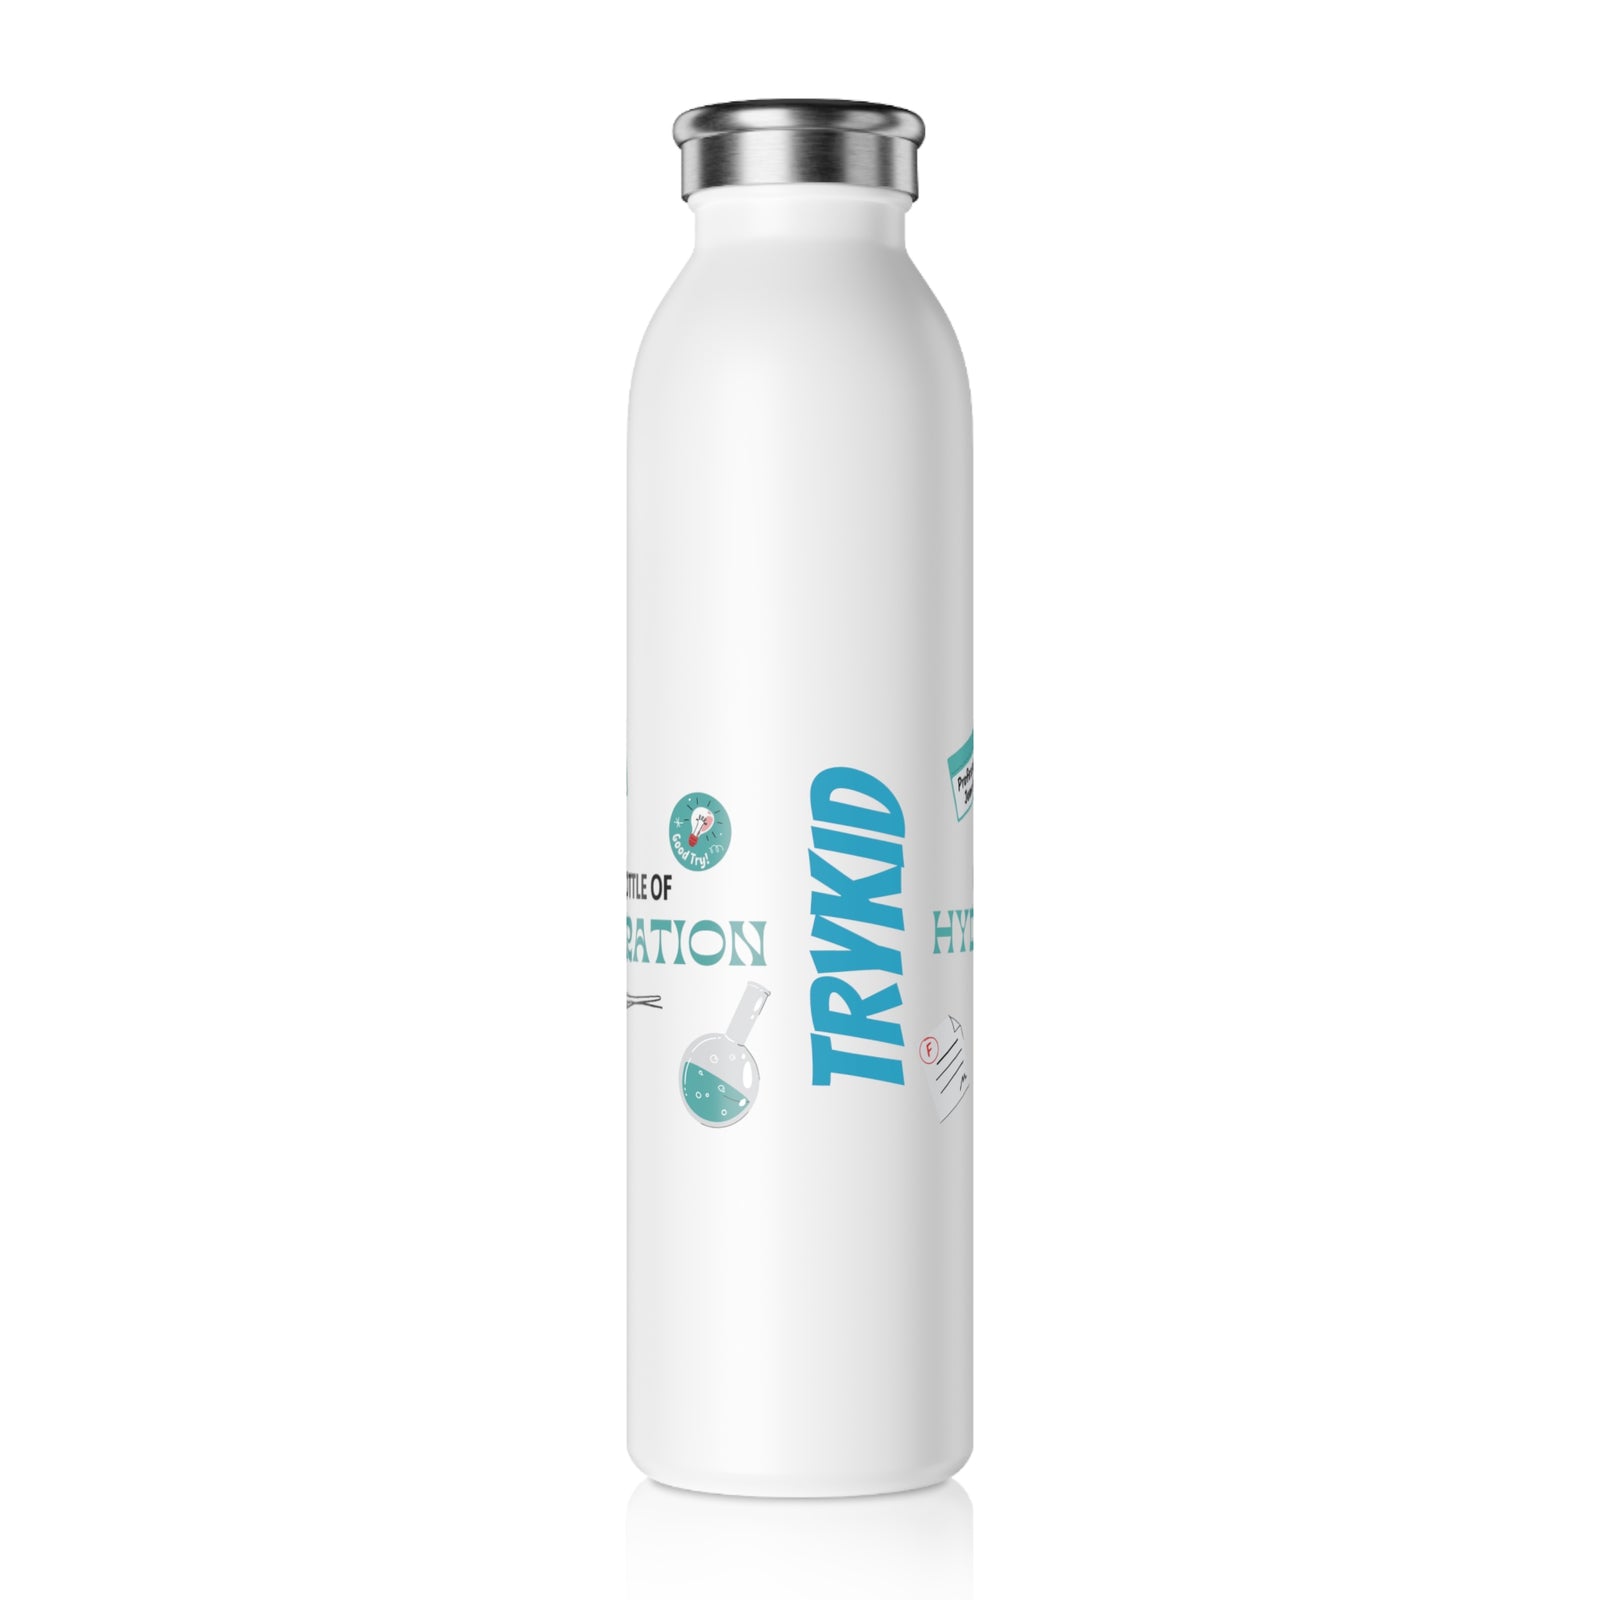 TRYKID Bottle Of Hydration Slim Water Bottle